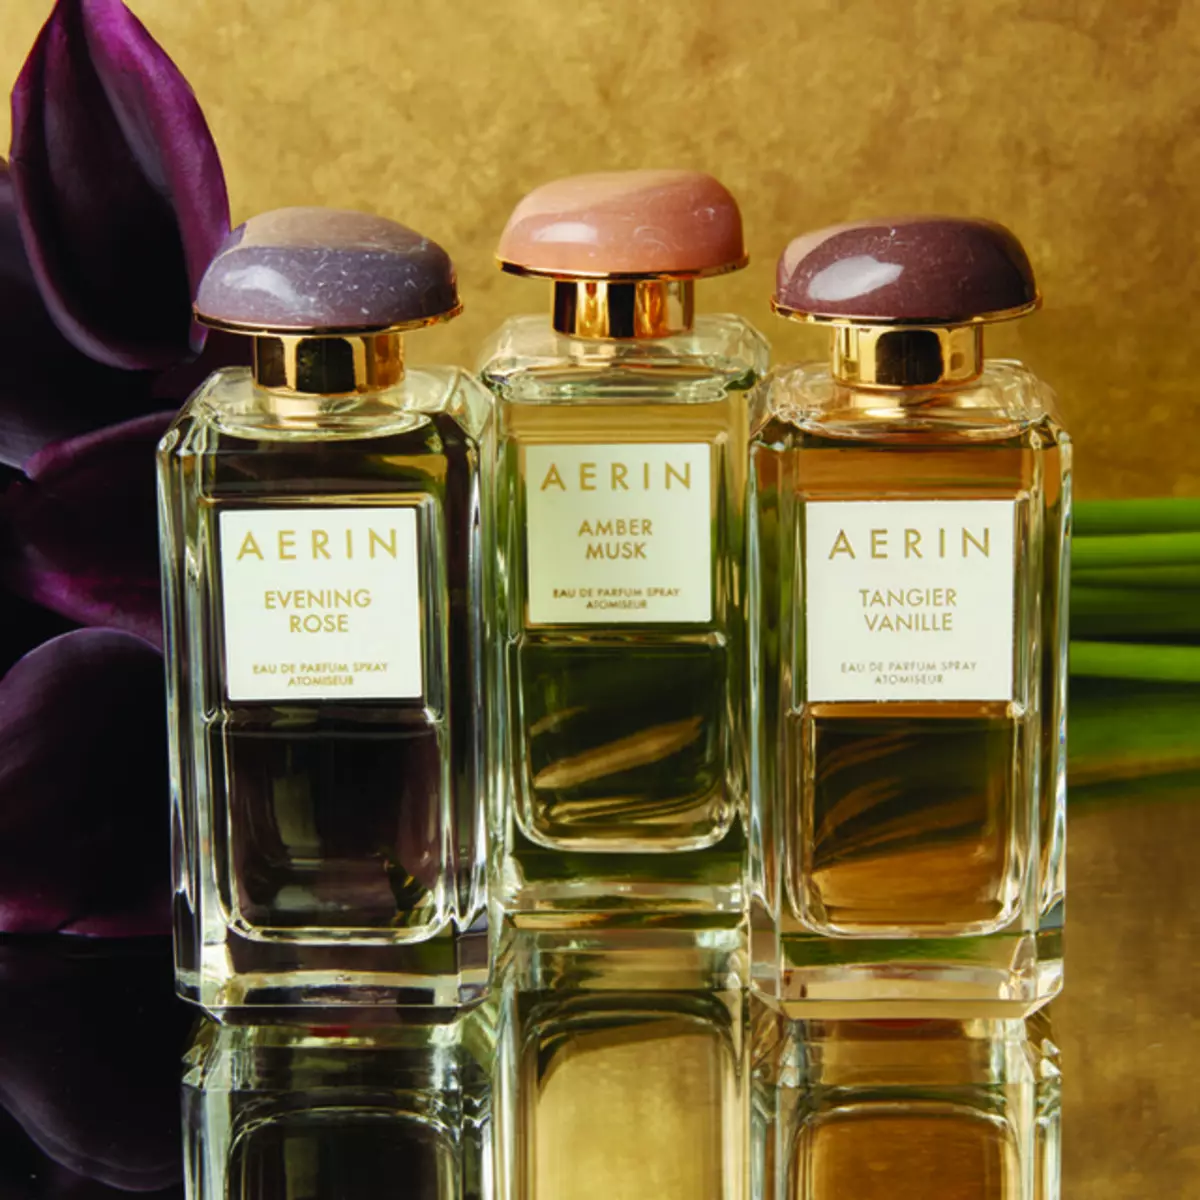 Perfumes Aerin Lauder: Parfume Amber Musk, Tanger Vanille og andre parfume, udvælgelseskriterier 25206_10